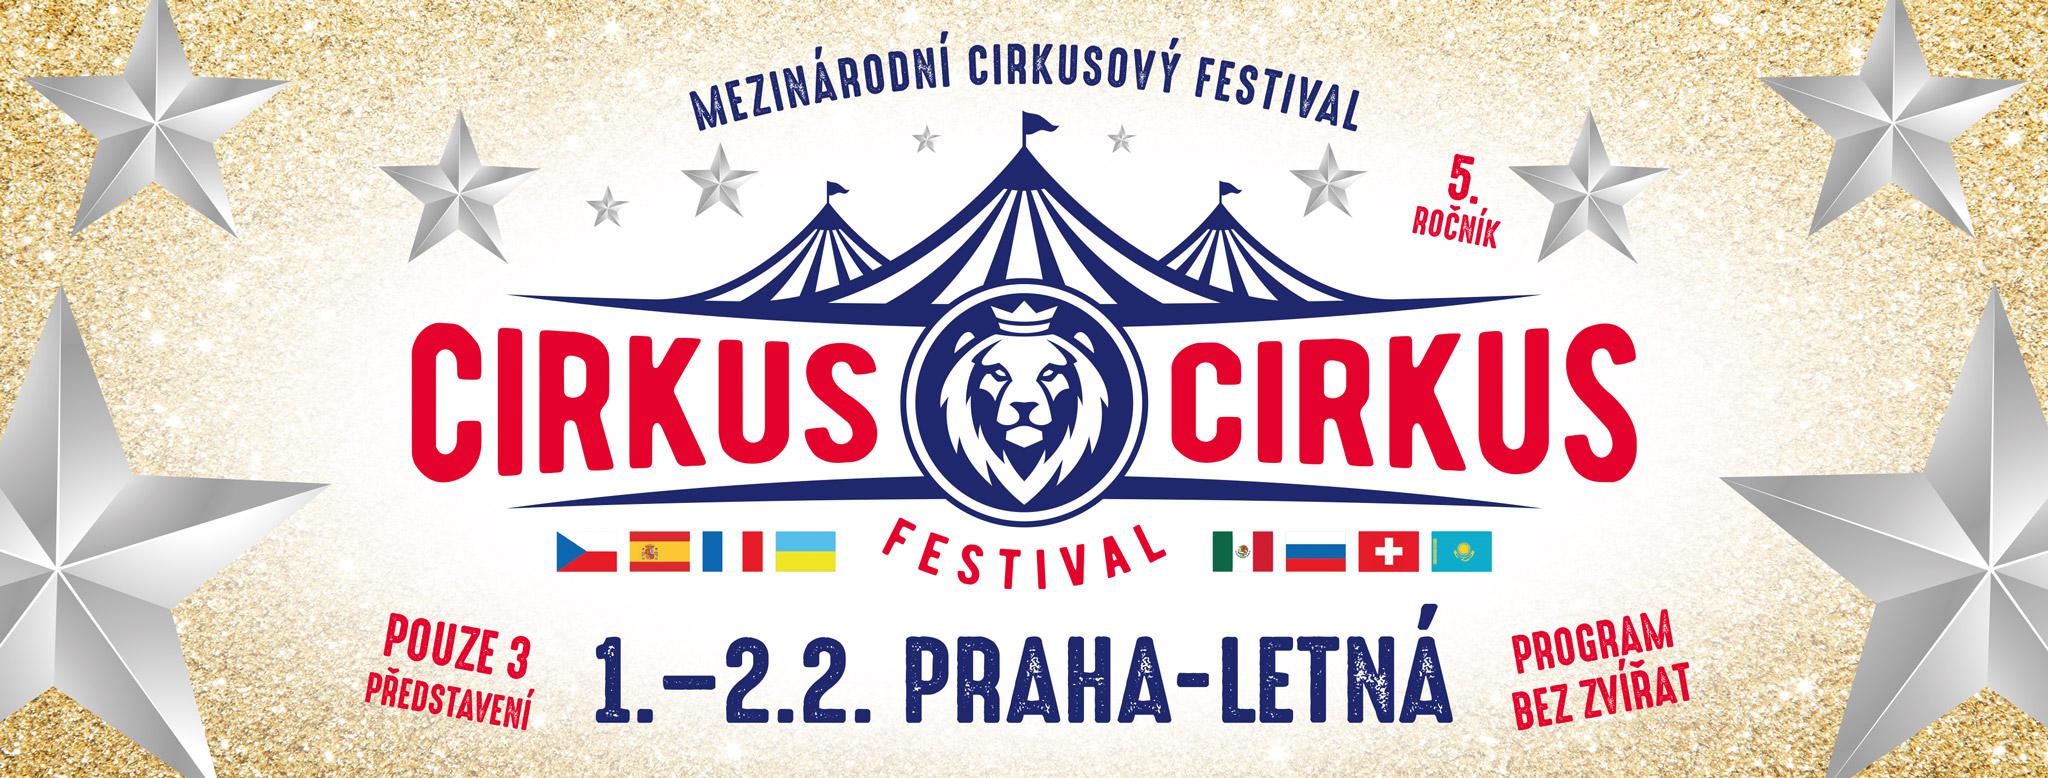 CIRKUS CIRKUS FESTIVAL Praha Letná